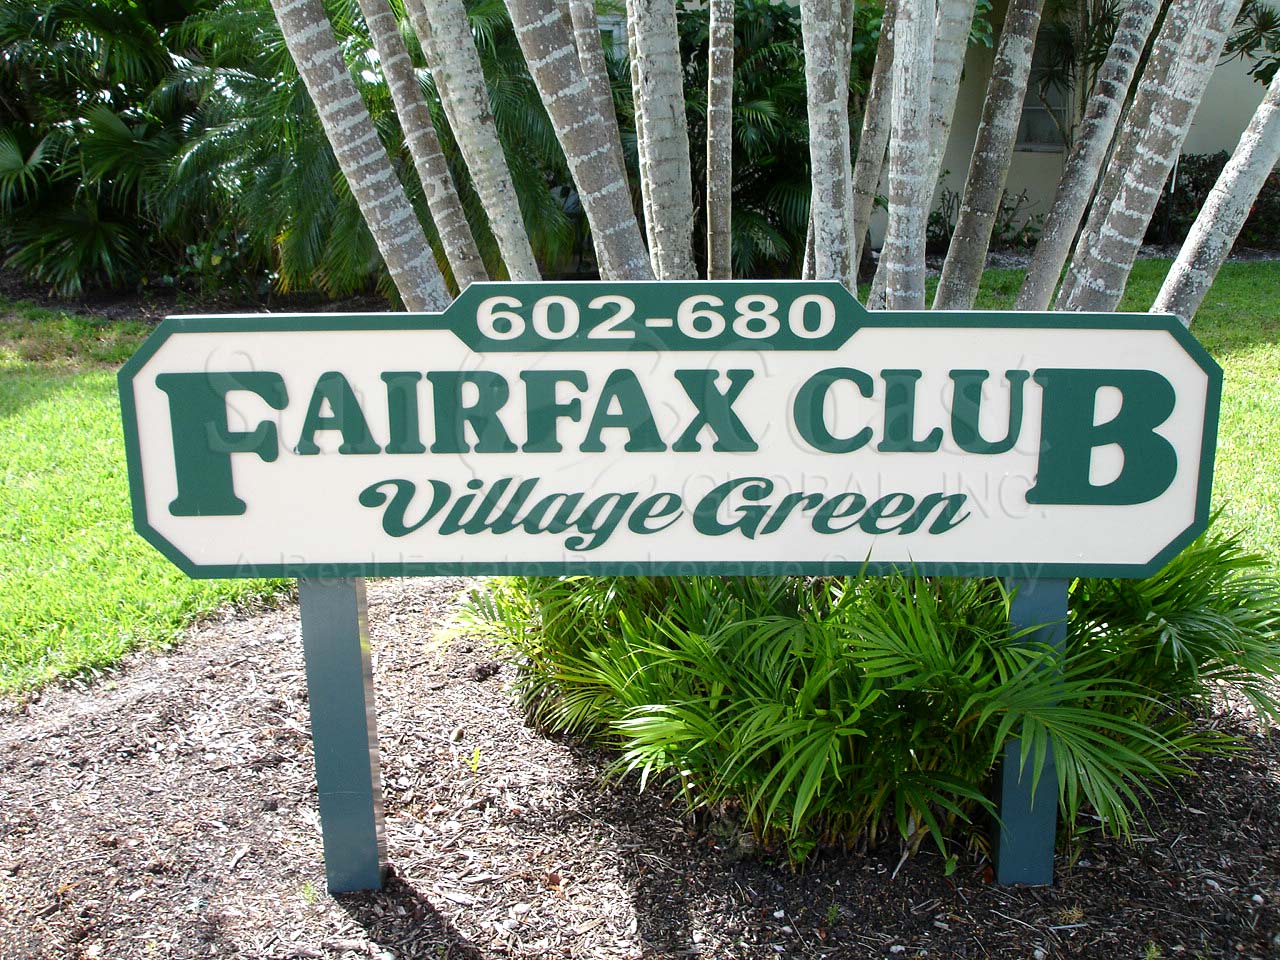 Fairfax Club Signage